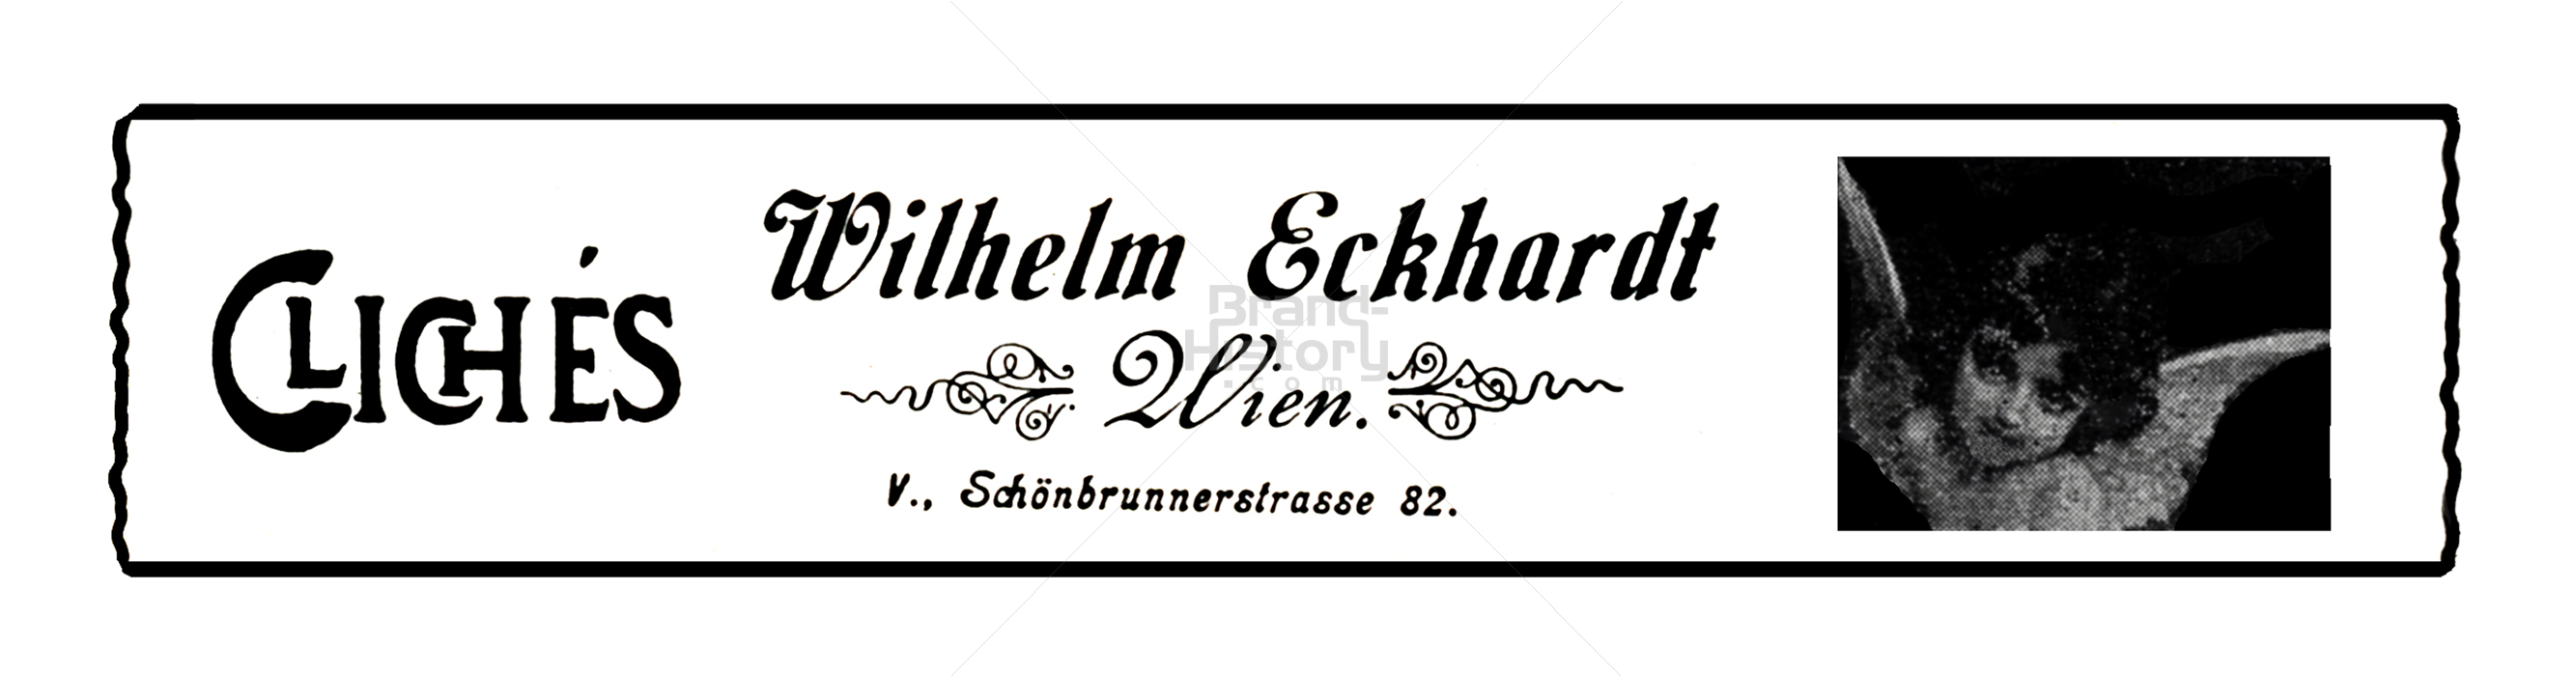 Wilhelm Eckhardt, Wien